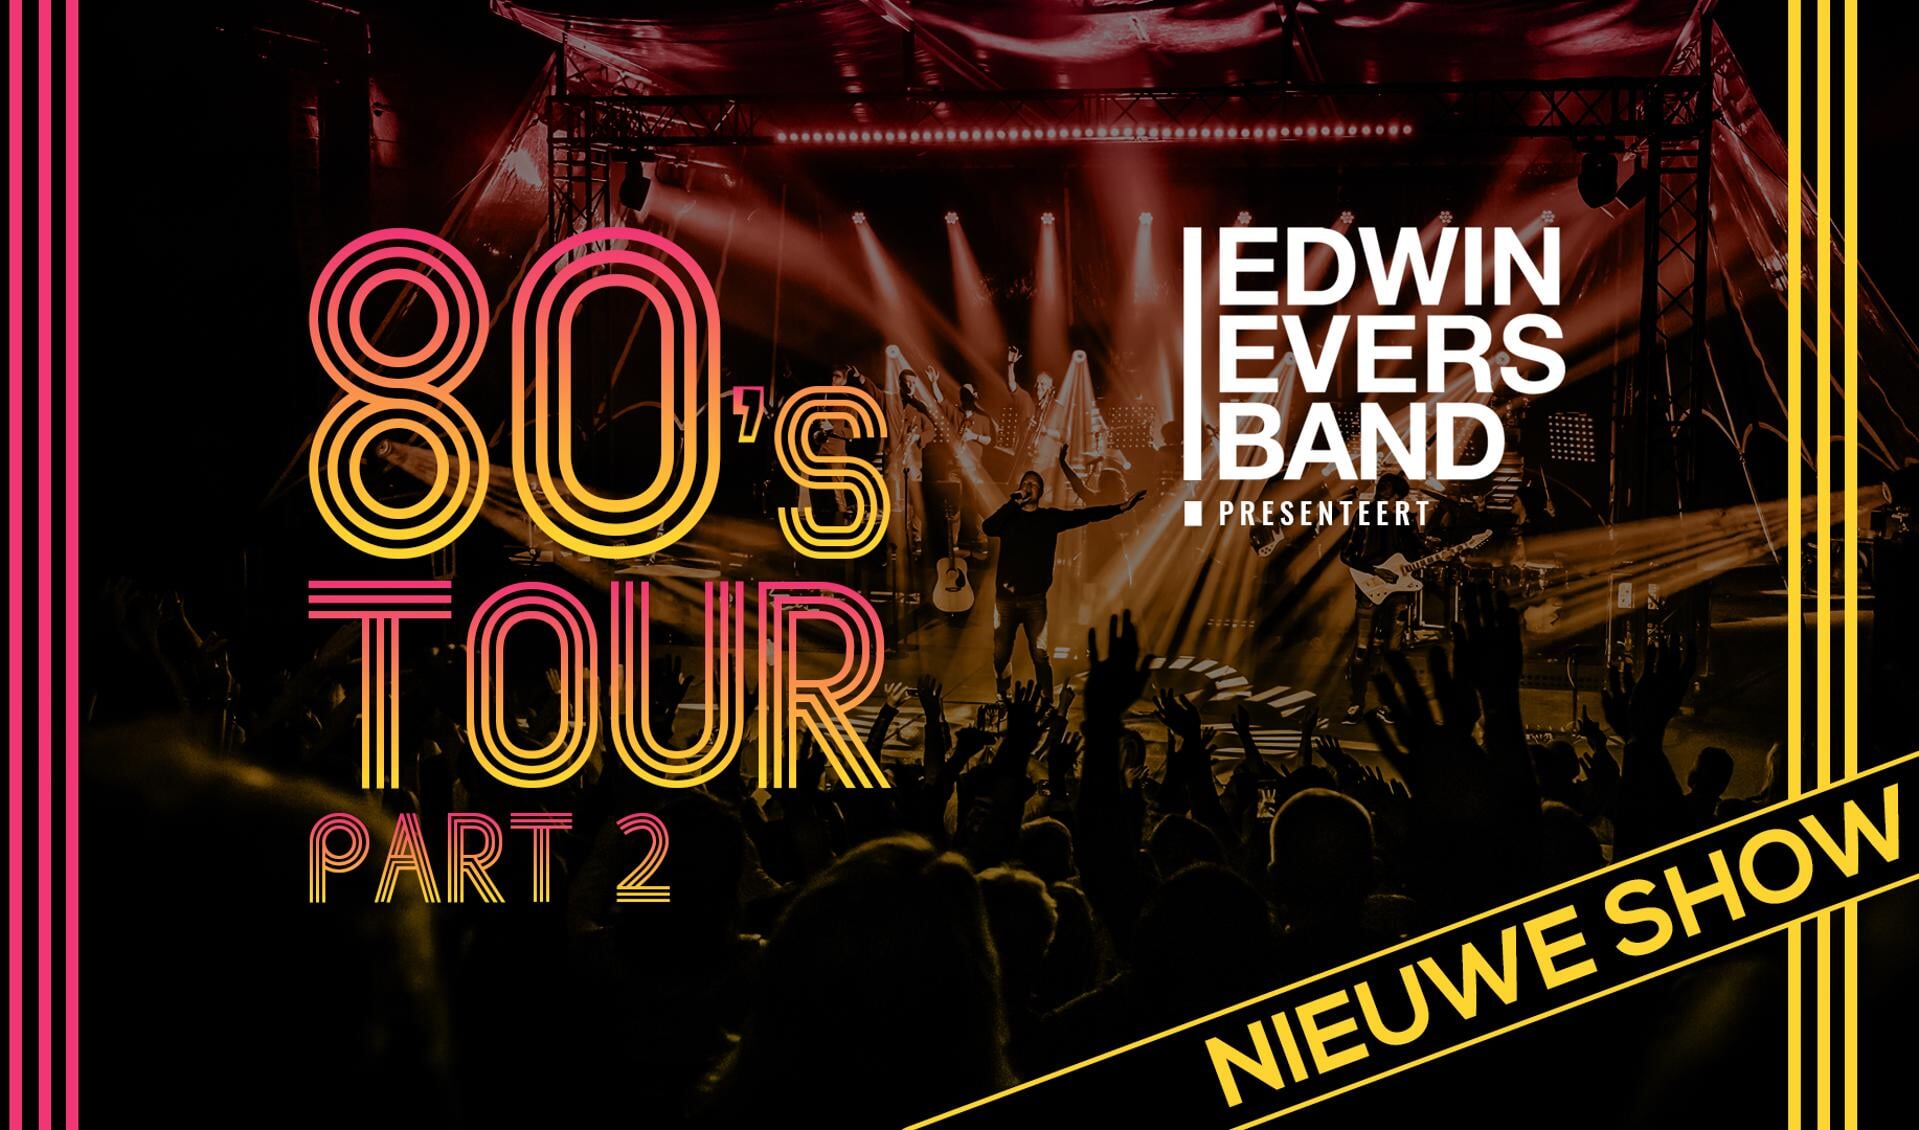 Edwin Evers Band met nieuwe 80’s tour naar Openluchttheater Eibergen. Foto: PR